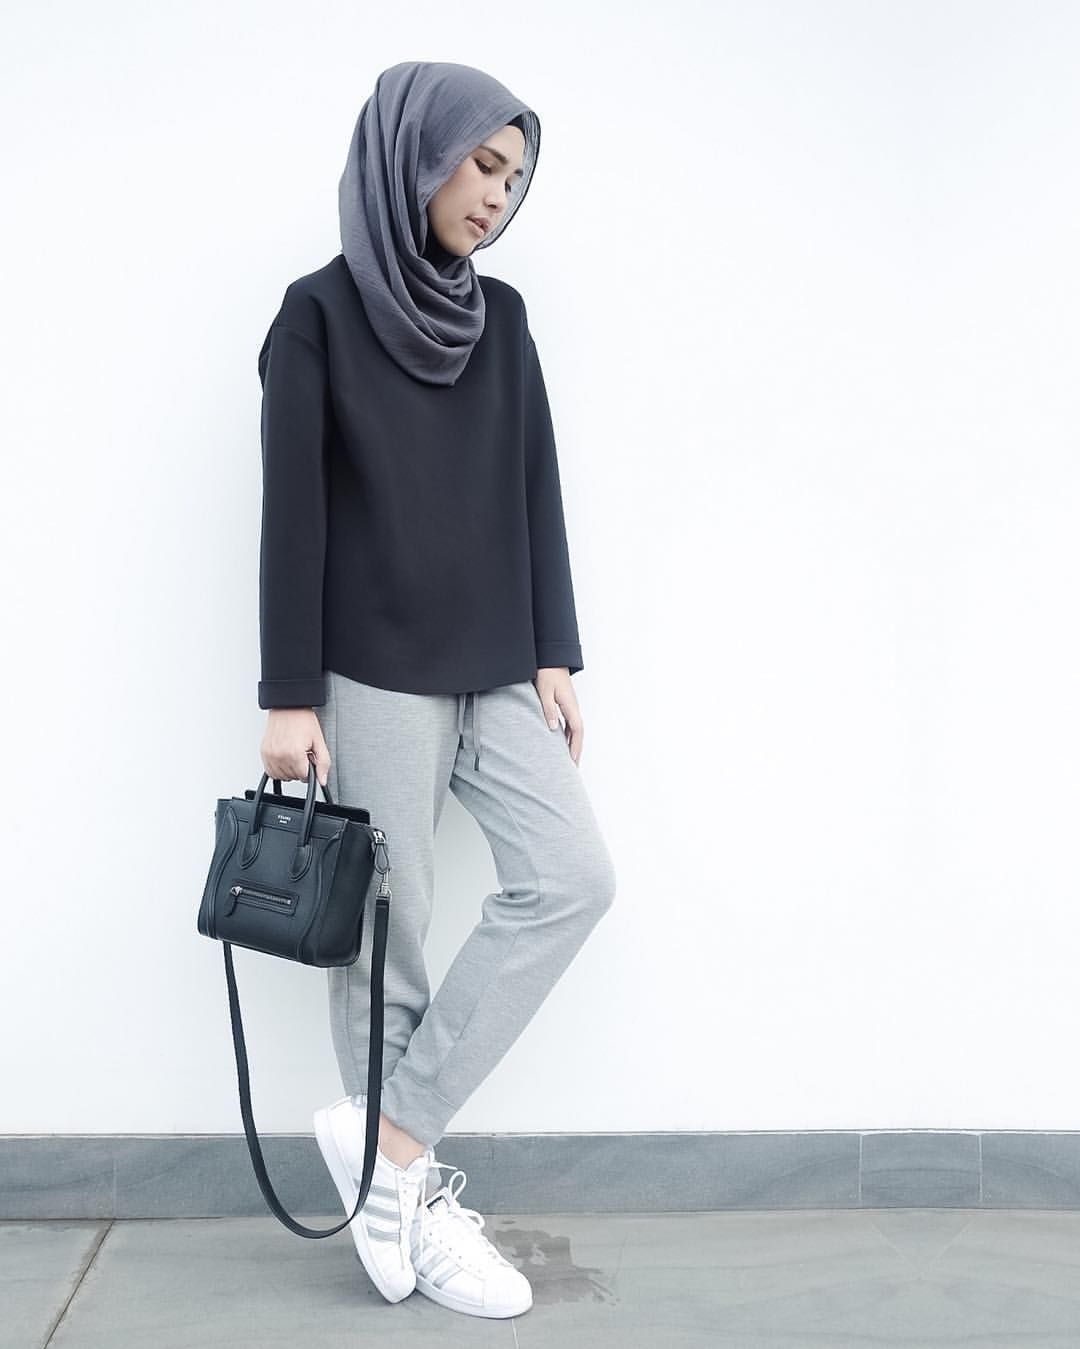 Style baju hijab simple untuk sehari hari